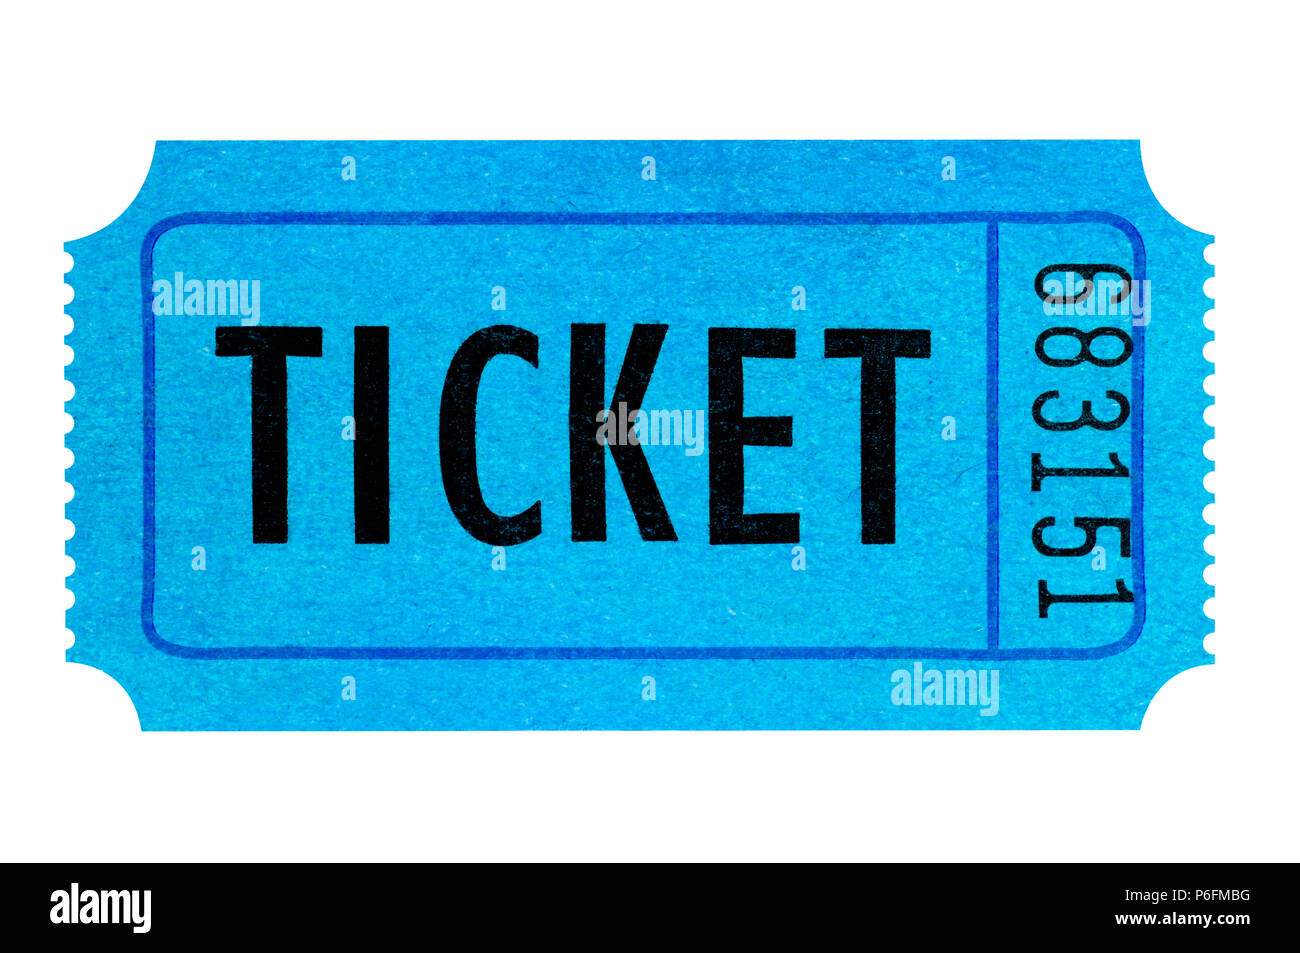 Blue ticket